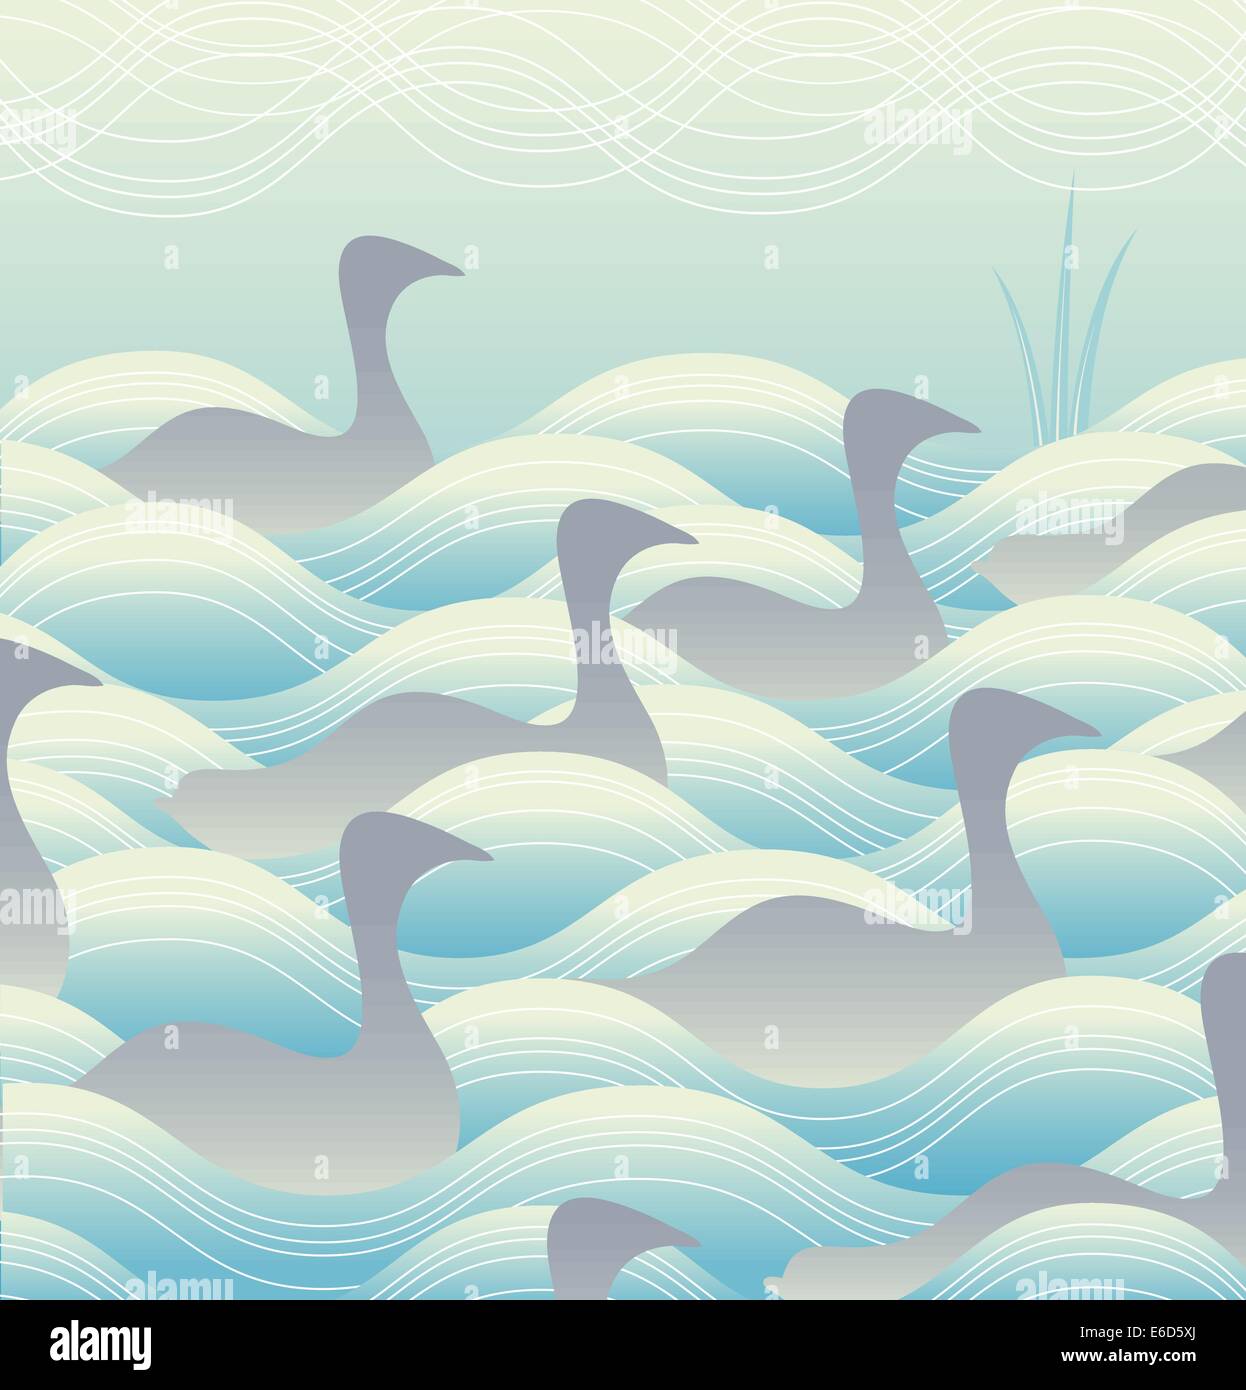 Bearbeitbares Vektor-Illustration eine Herde von Enten oder Gänsen auf dem Wasser Stock Vektor